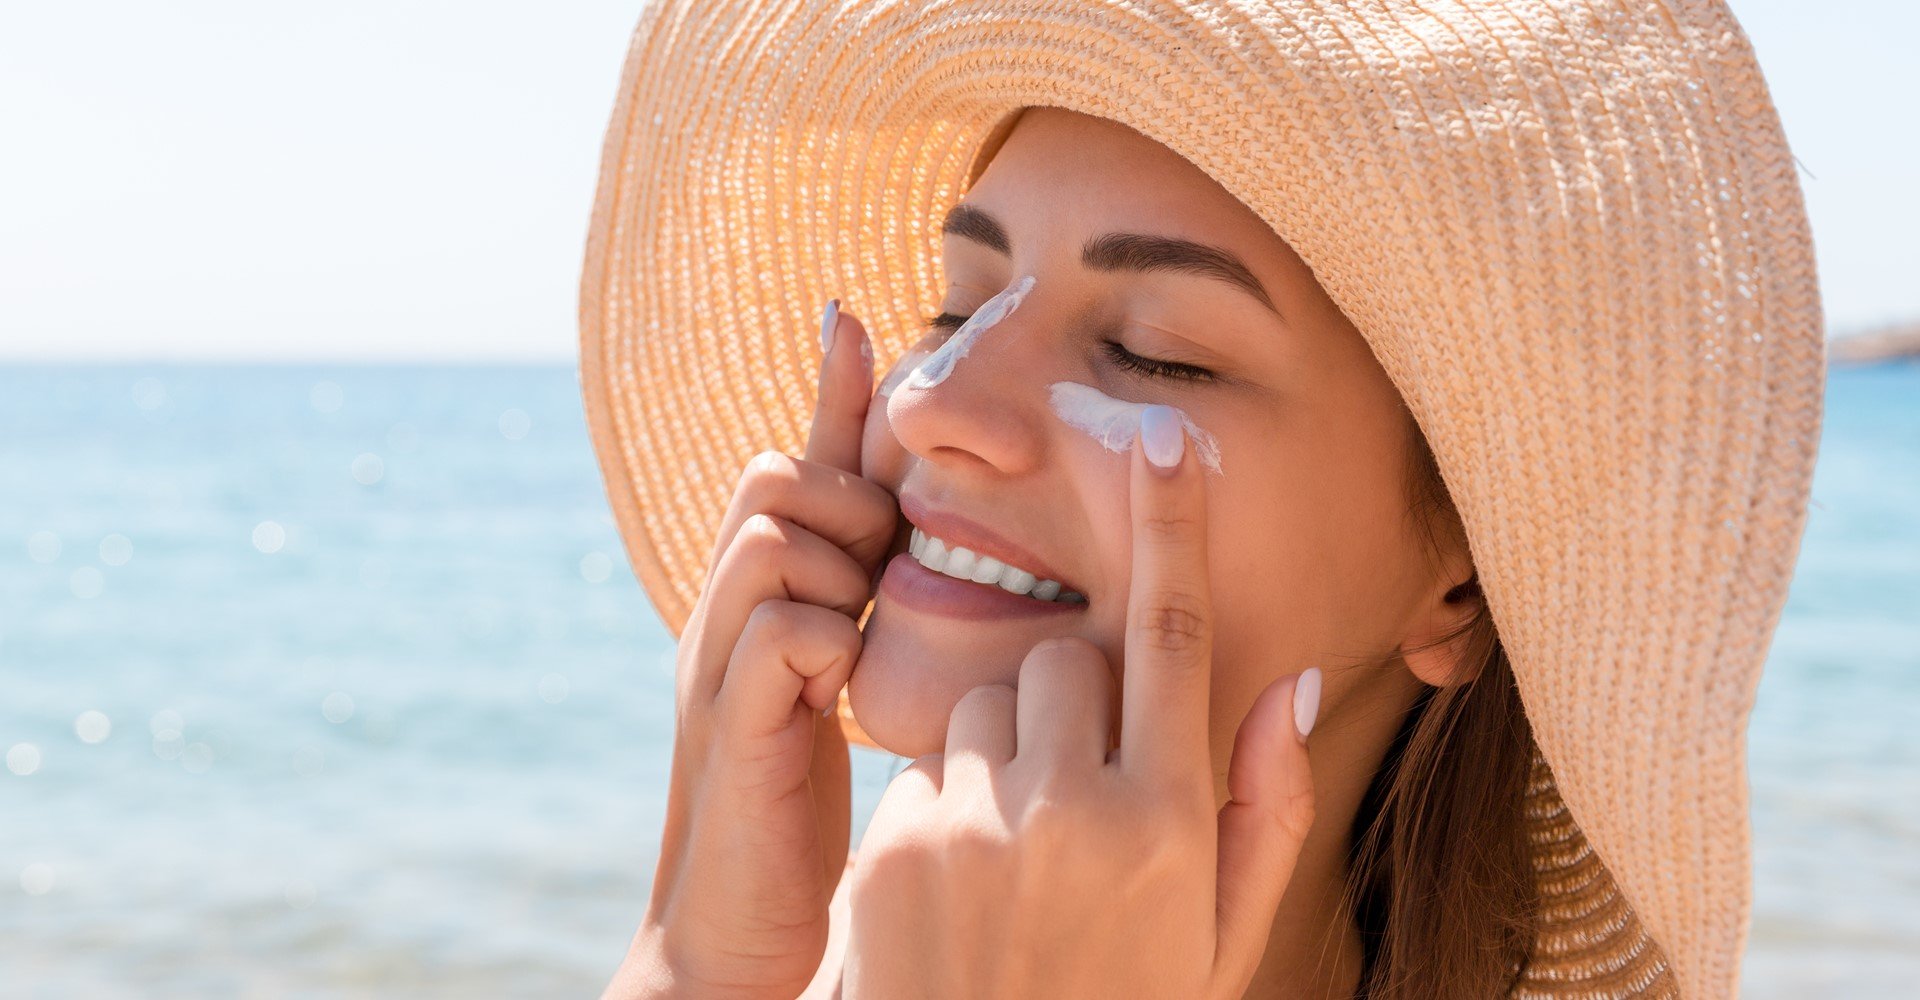 Como aplicar protetor solar no rosto? Veja dicas + passo a passo para  acertar nos cuidados com a pele - L'Oréal Paris